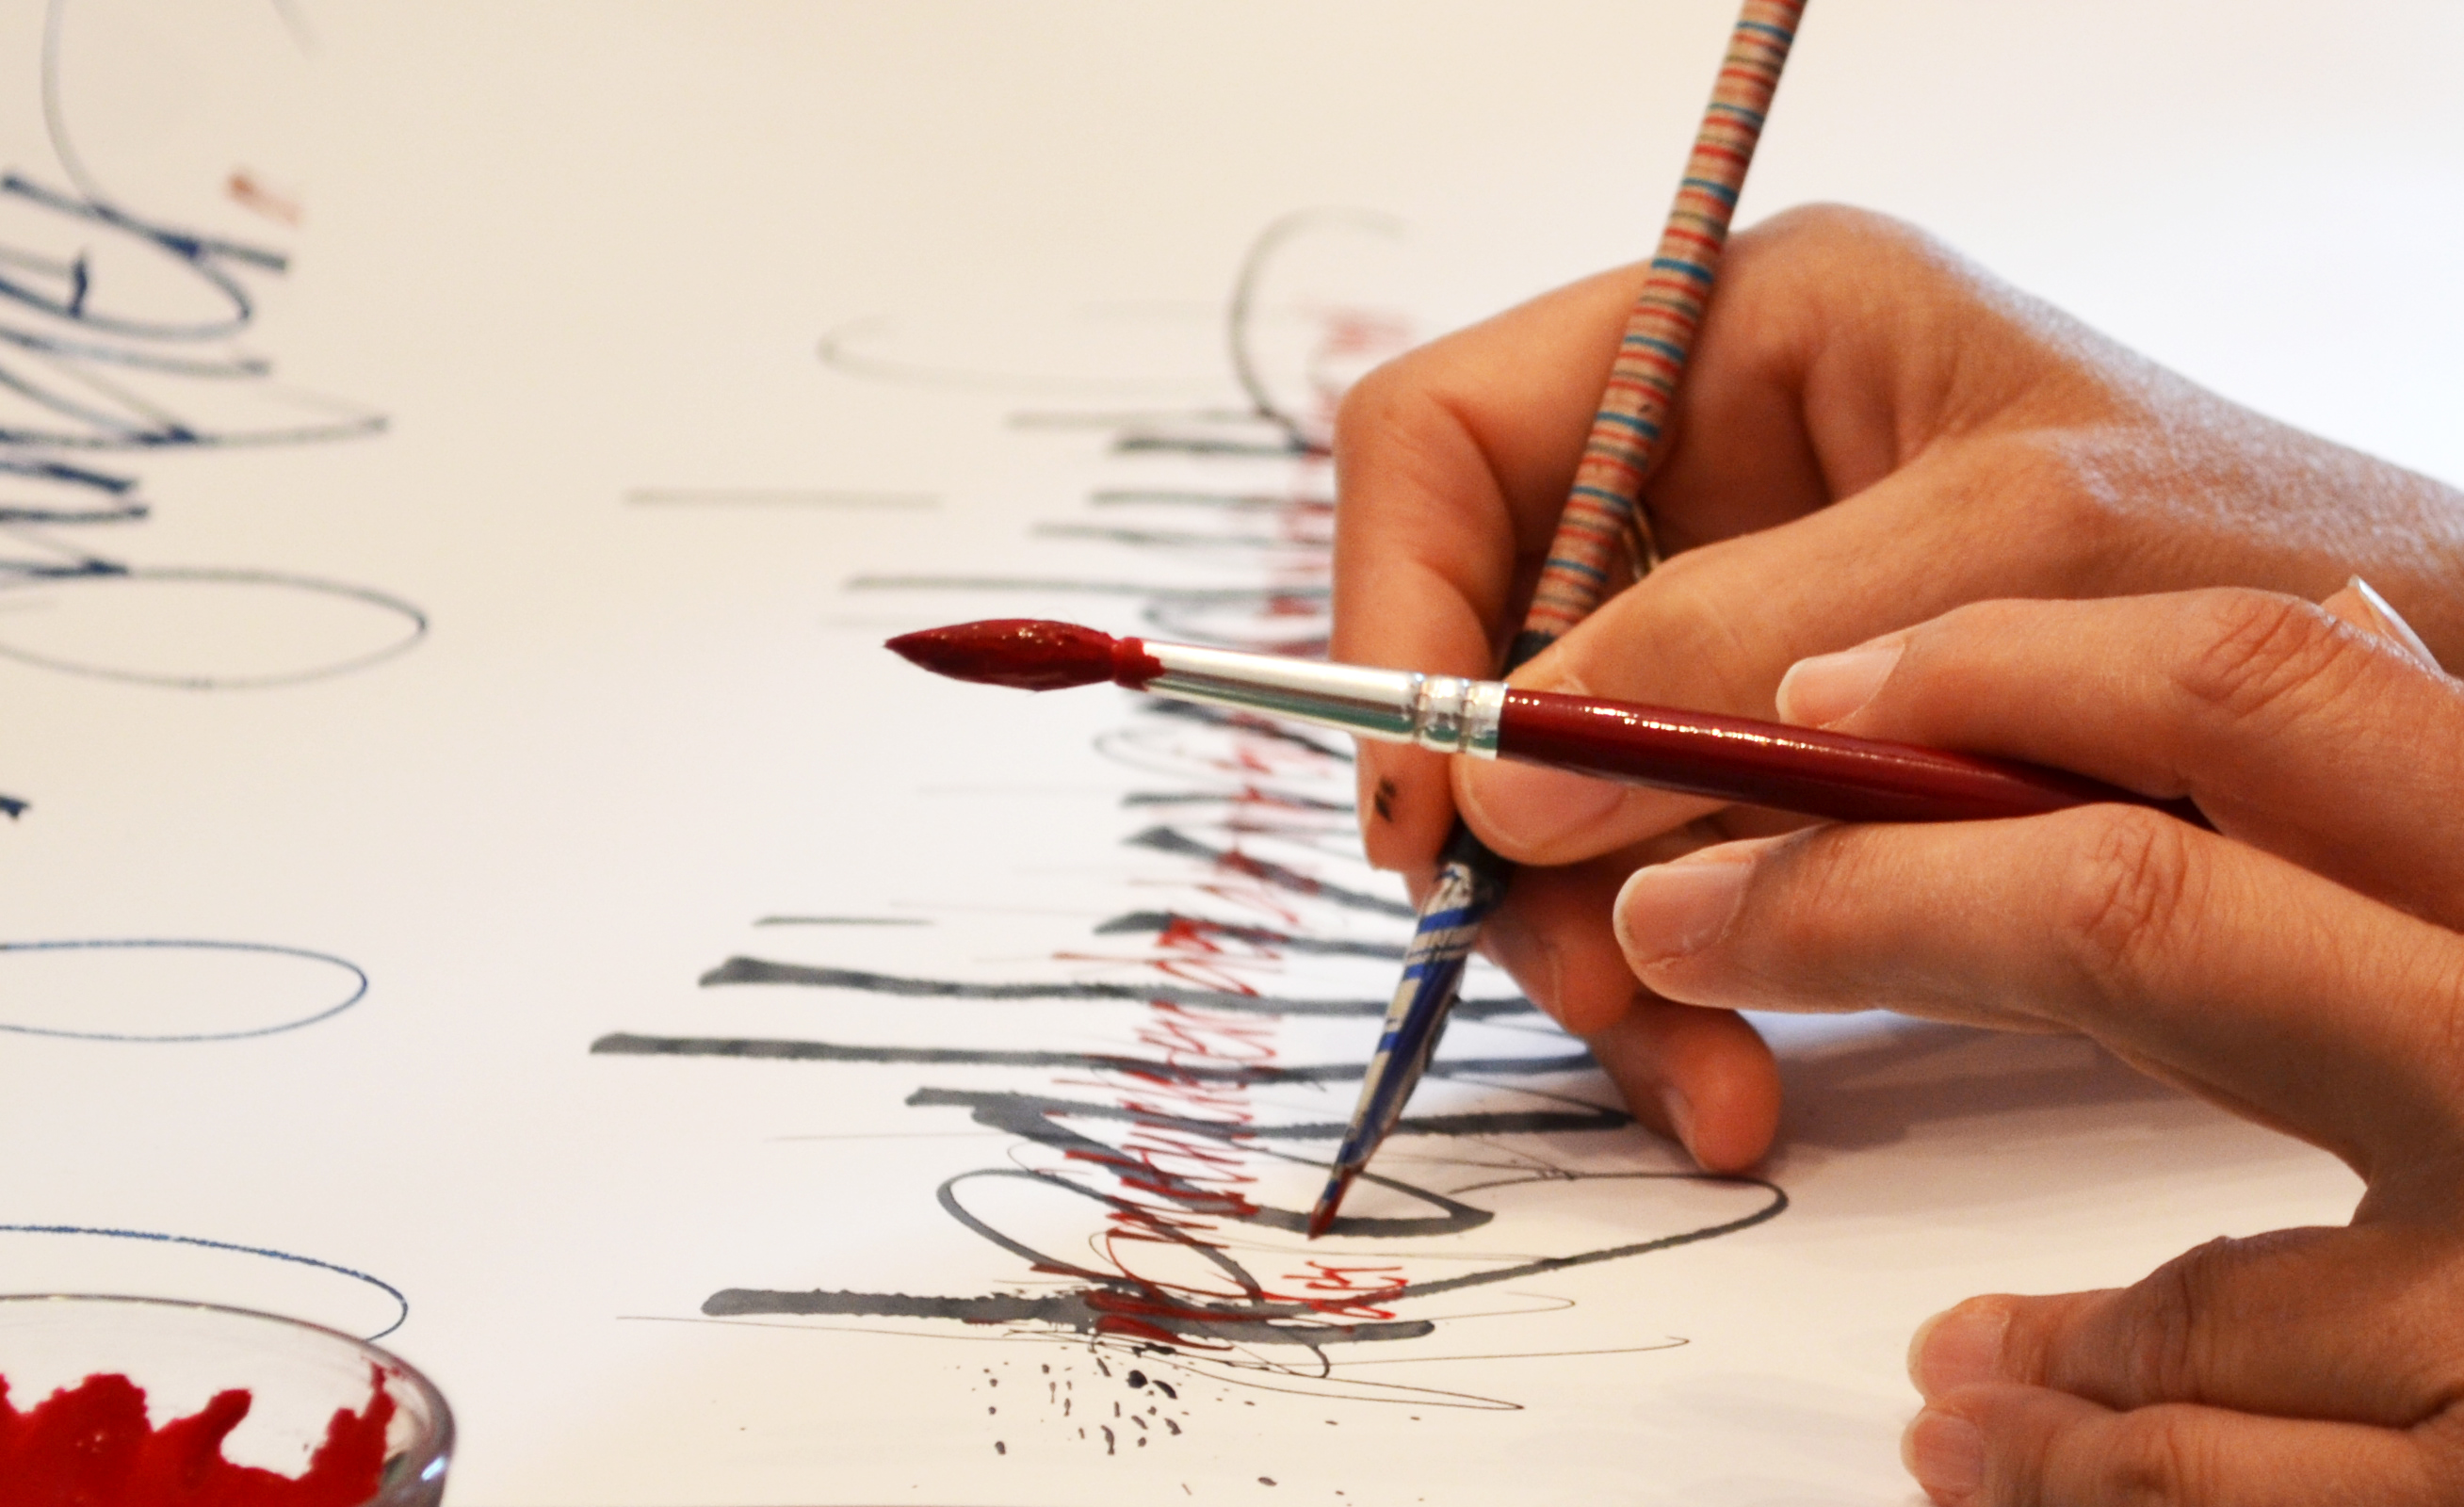 Hände malen und schreiben auf weißem Papier mit Feder und Pinsel